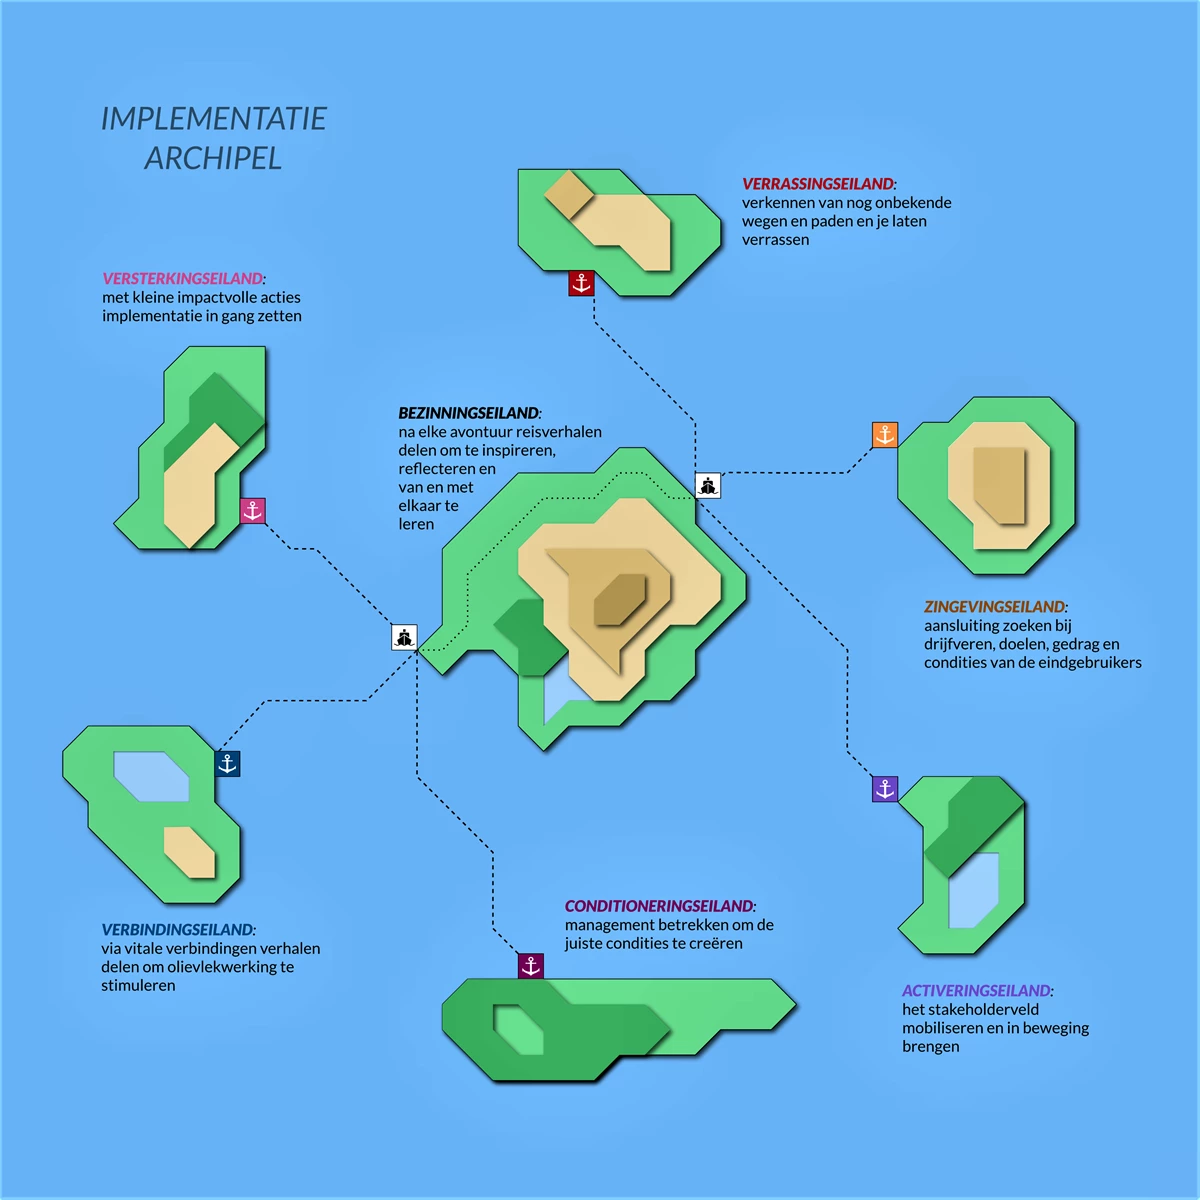 Dit plaatje visualiseert de verschillende thema's als een archipel bij implementatie. Denk aan: versterkingseiland, verrassingseiland, bezinningseiland, zingevingseiland, verbindingseiland, conditioneringseiland, activeringseiland.